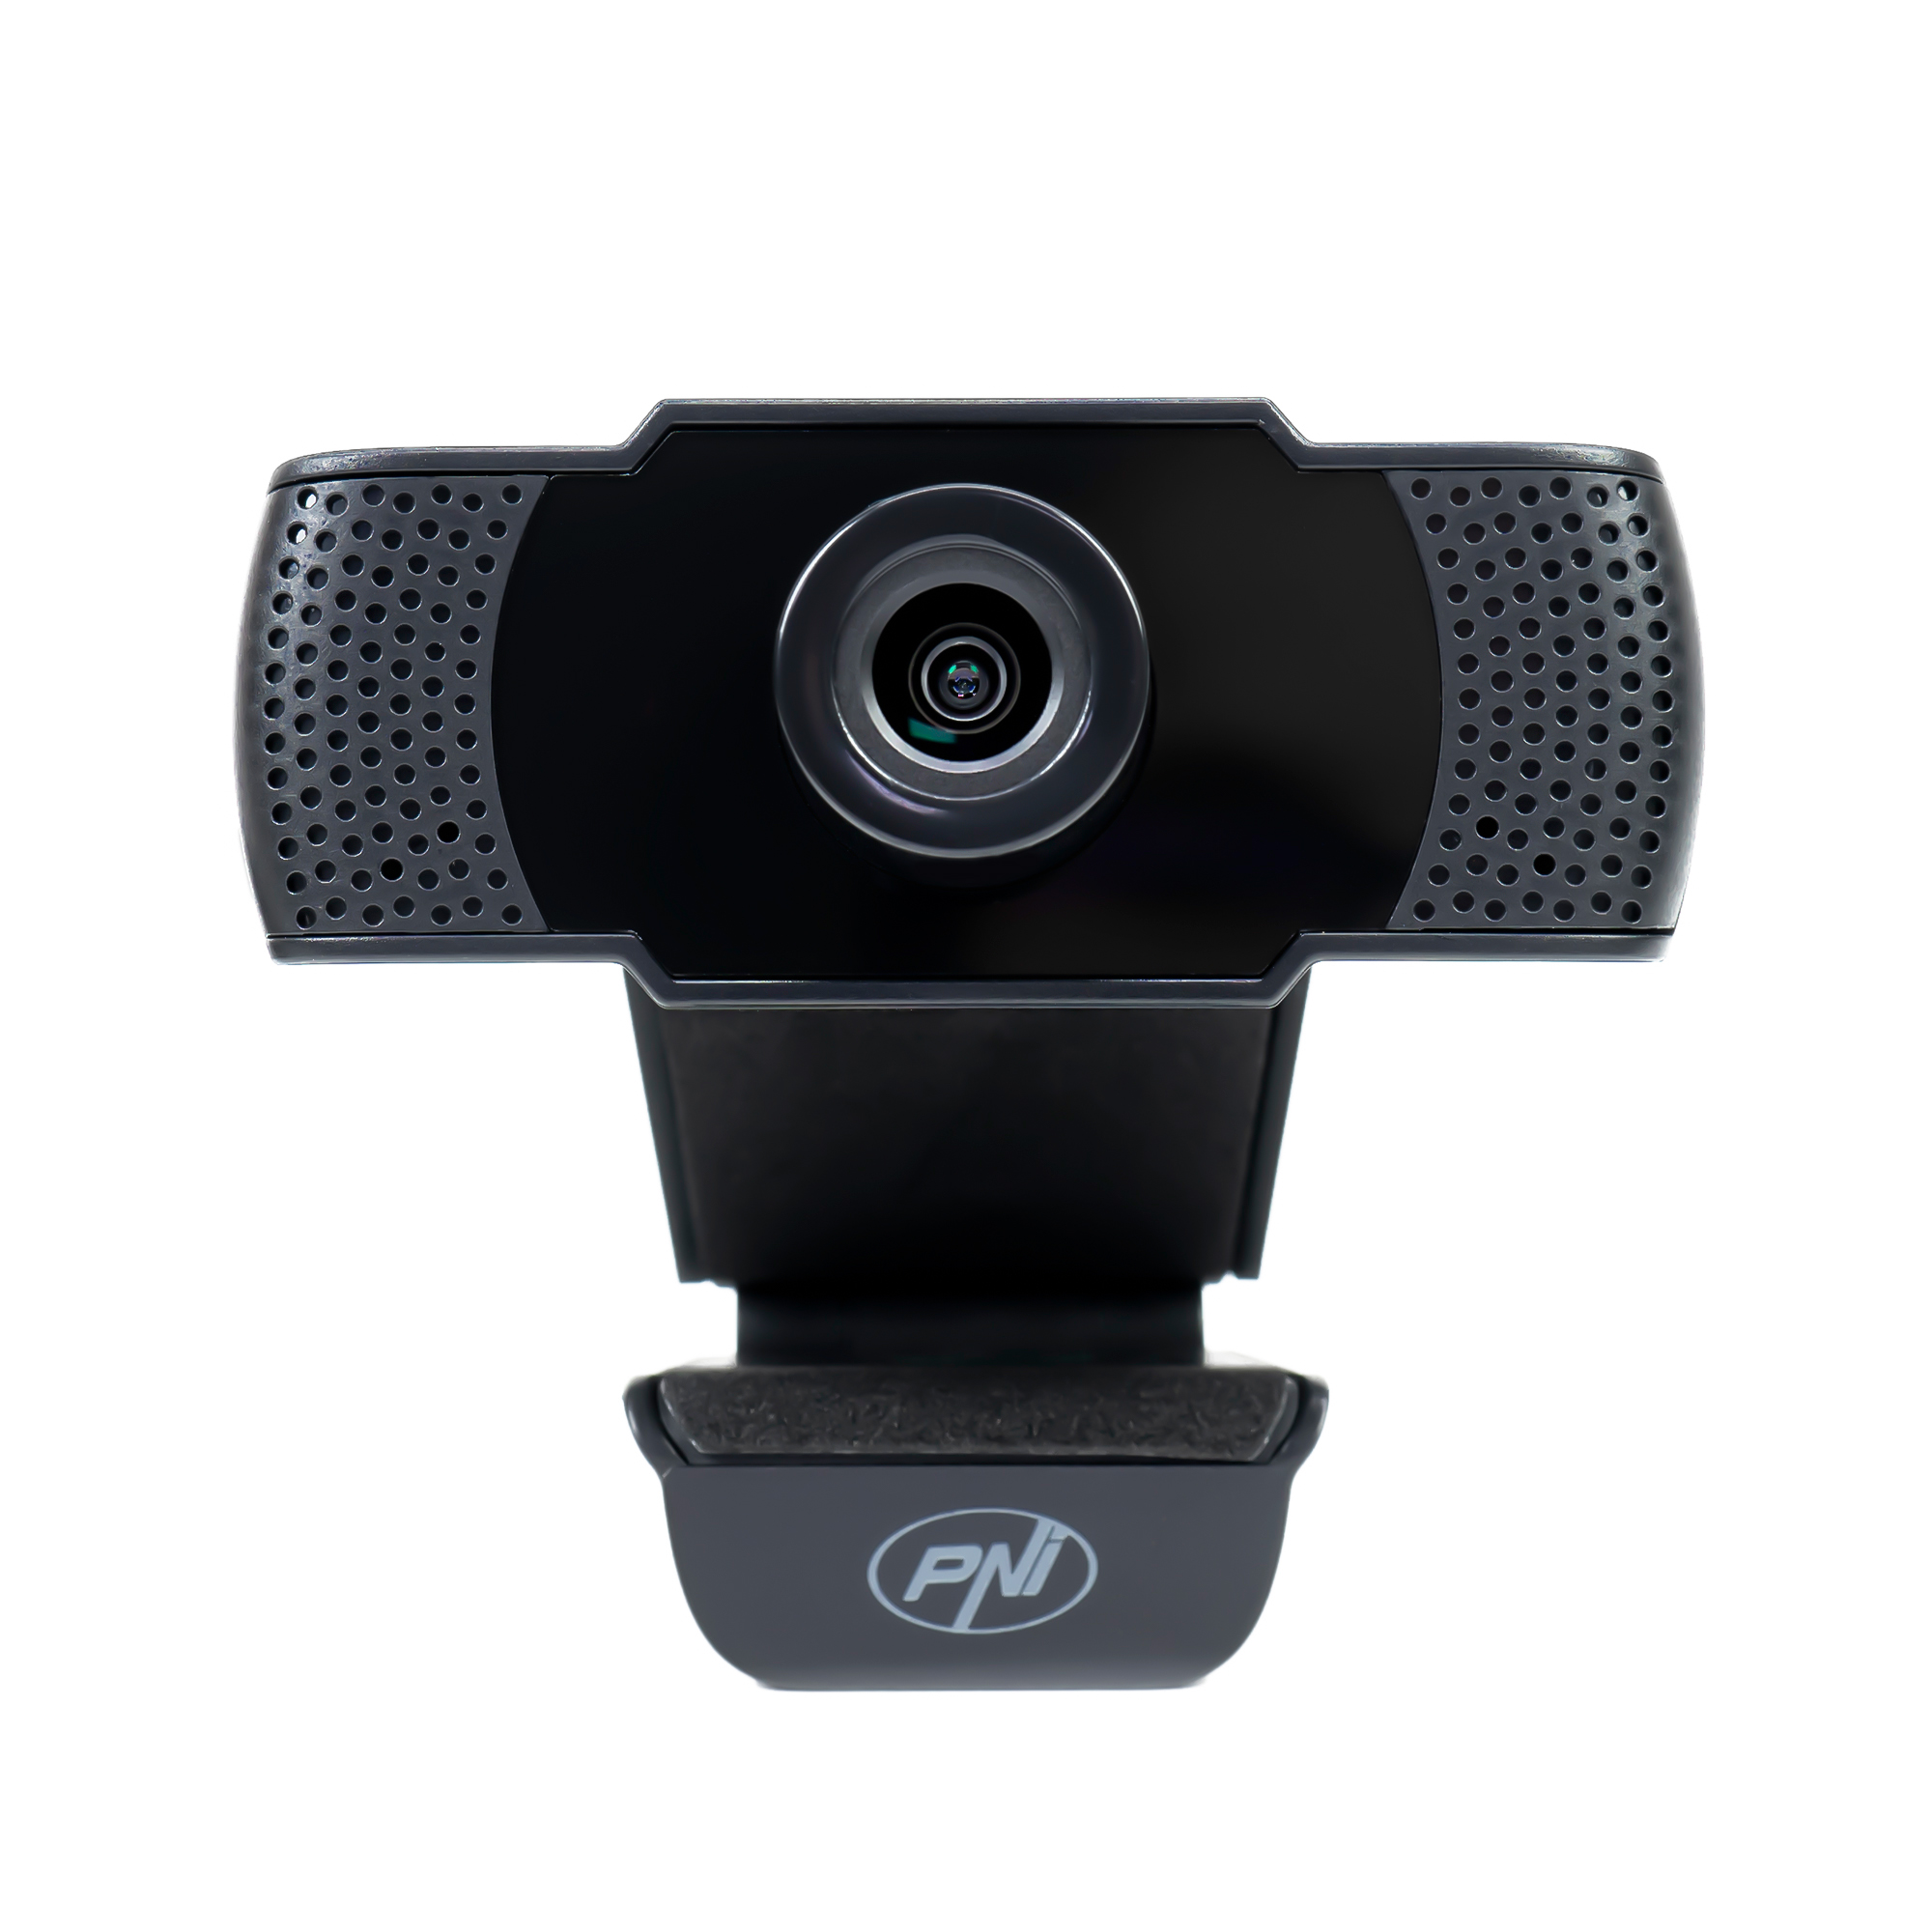 Camera Web PNI CW1850 Full HD 1080P 2MP, USB, clip-on, microfon stereo incorporat image7